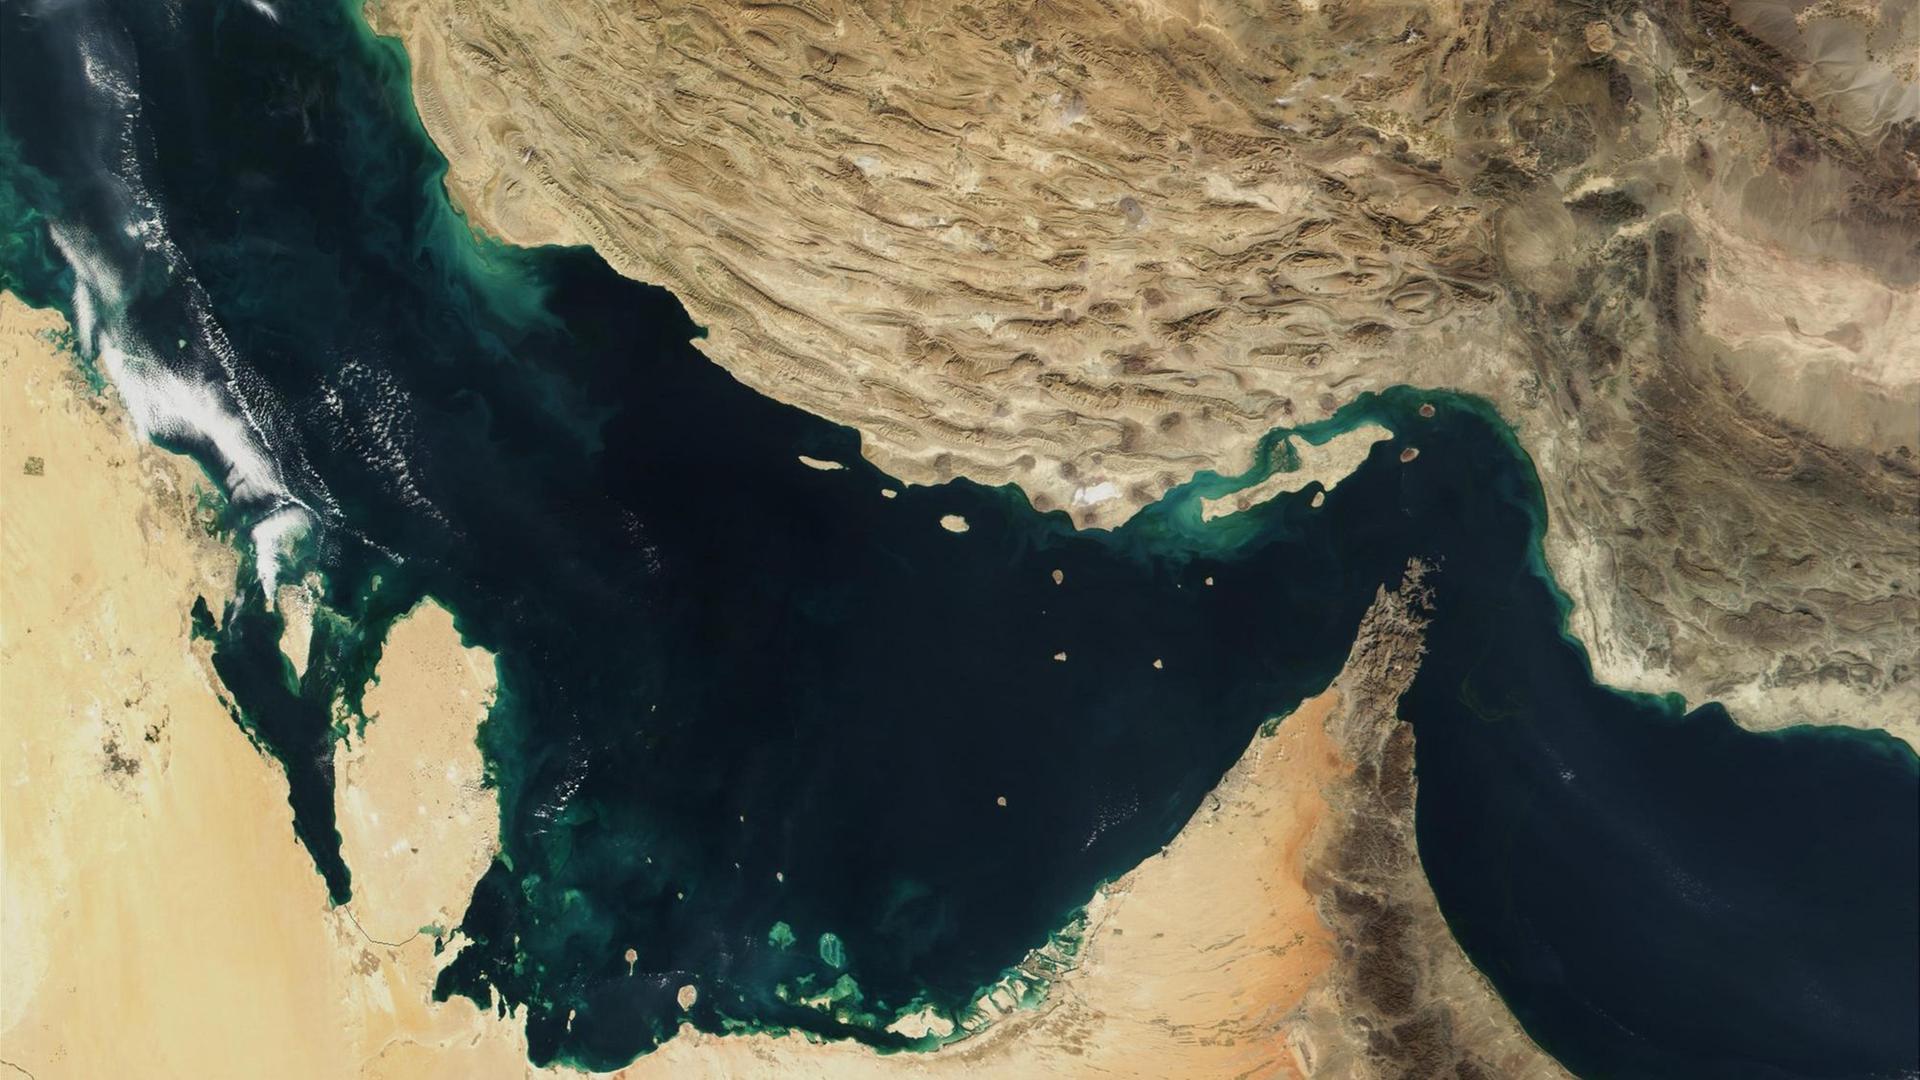 Der Persische Golf, die Straße von Hormus und der Golf von Oman in einer Satellitenaufnahme.